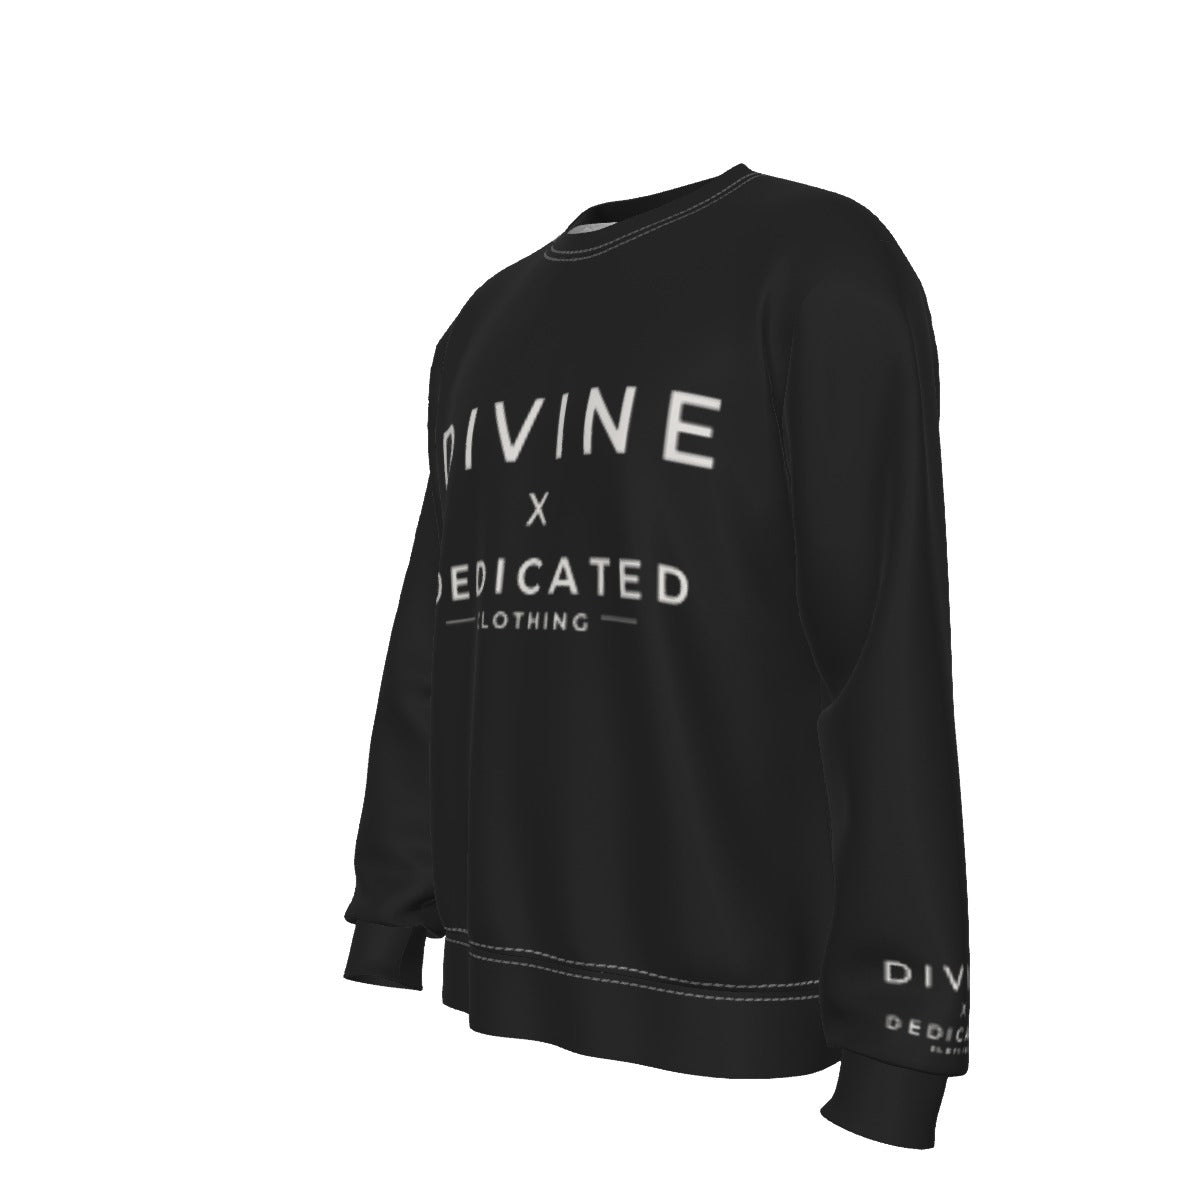 Divine Dedicated Heavy Fleece Sweatshirt